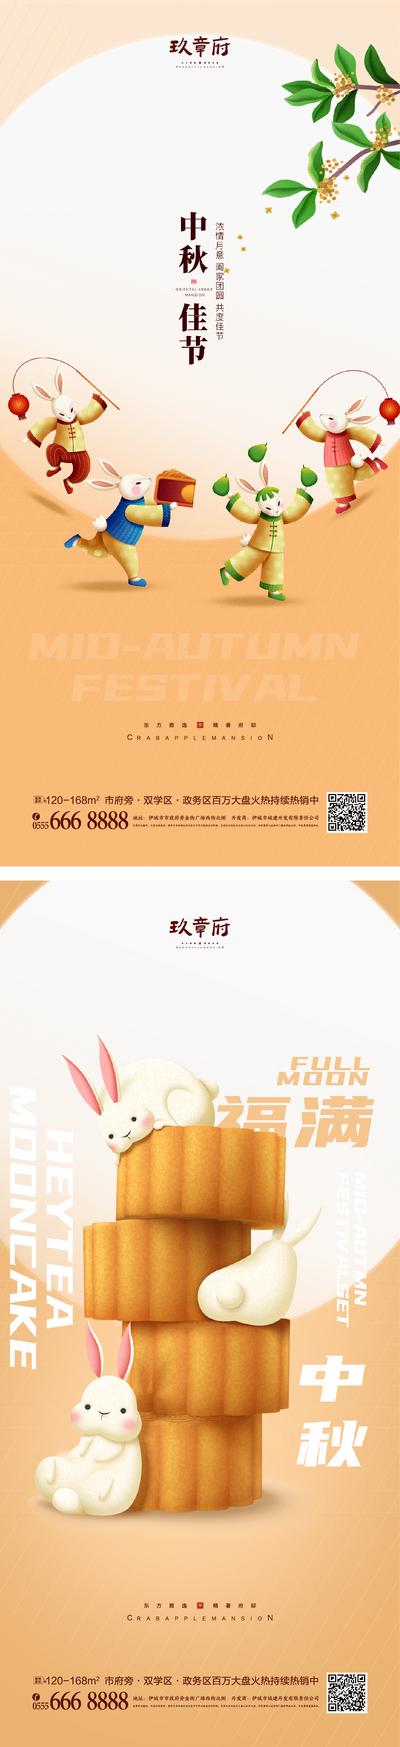 南门网 海报 中国传统节日 中秋节 月亮 月饼 兔子 团圆 插画 手绘